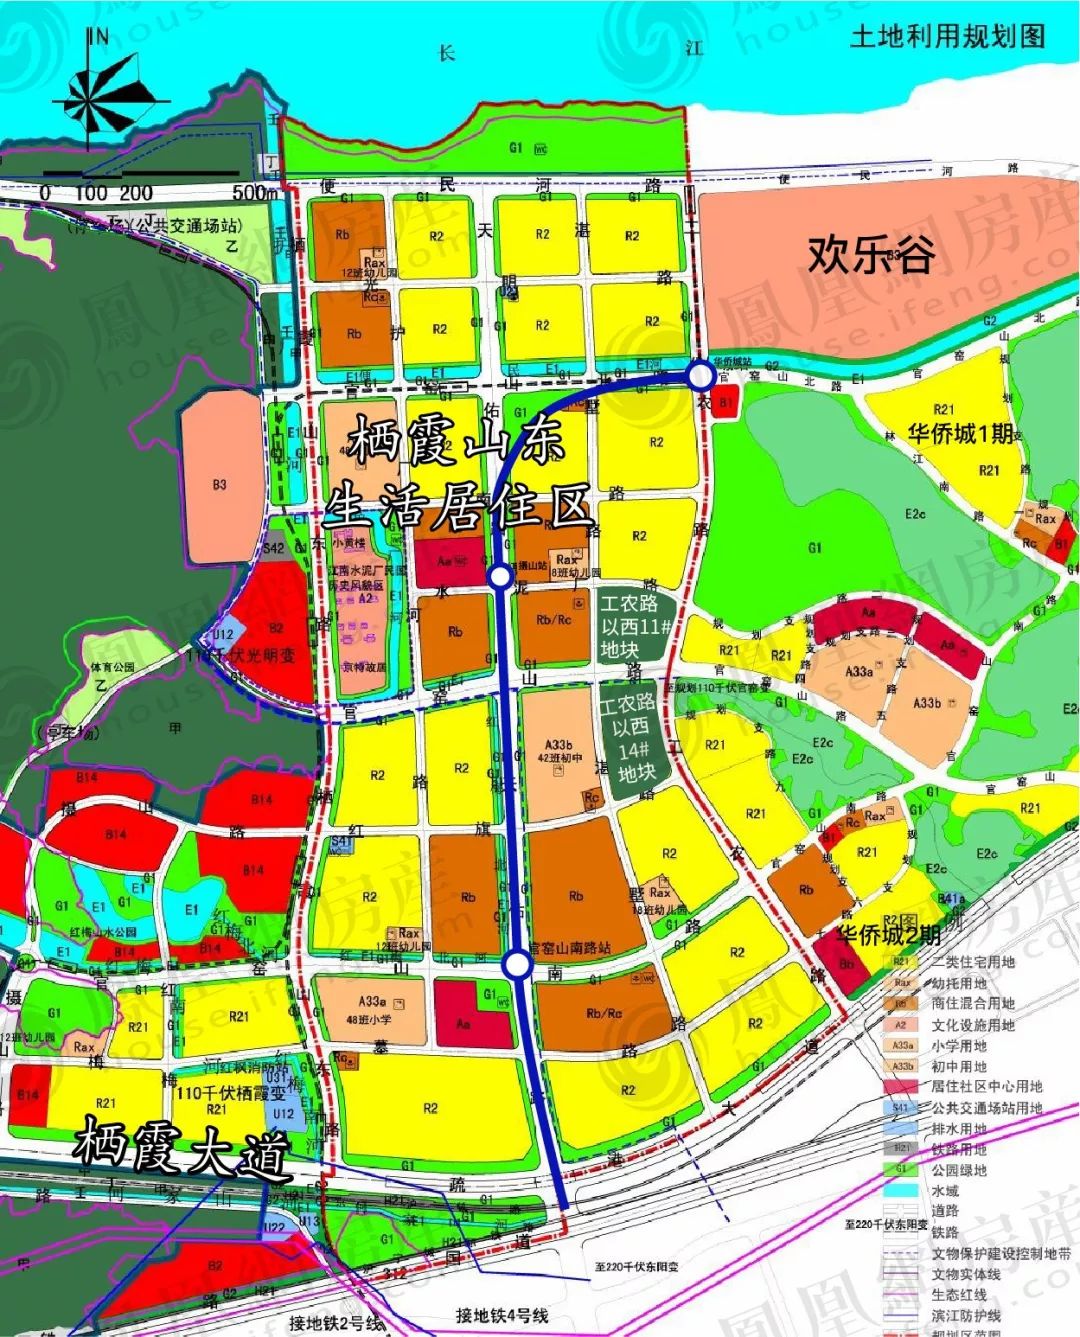 房产 正文  近日,南京土地储备中心申报了栖霞山东居住区两幅土地